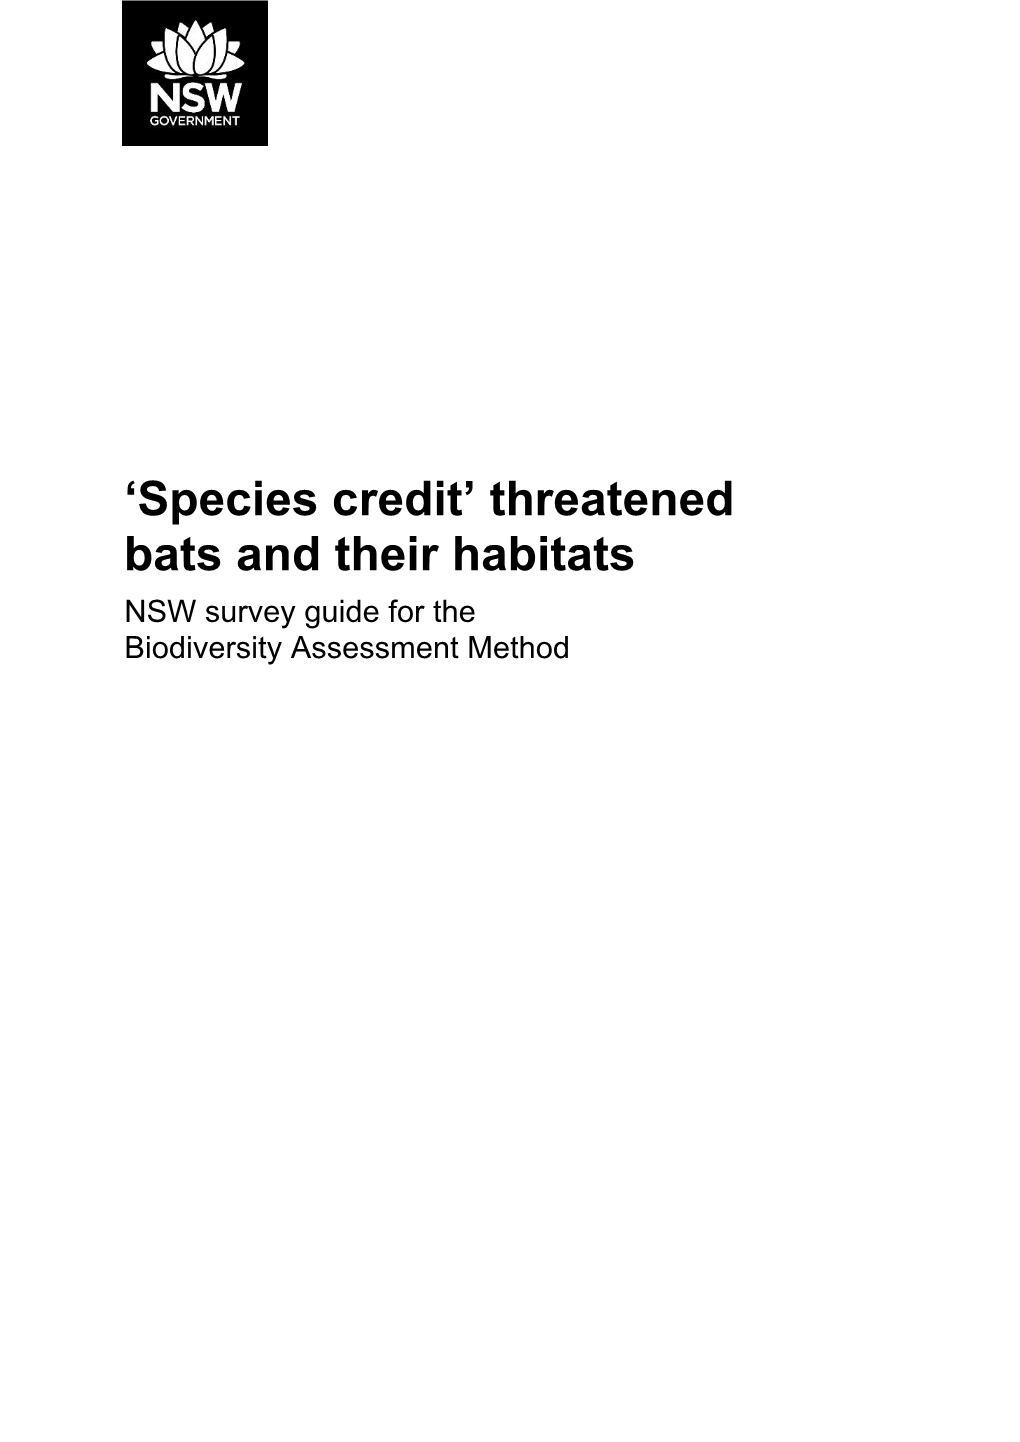 Species Credit